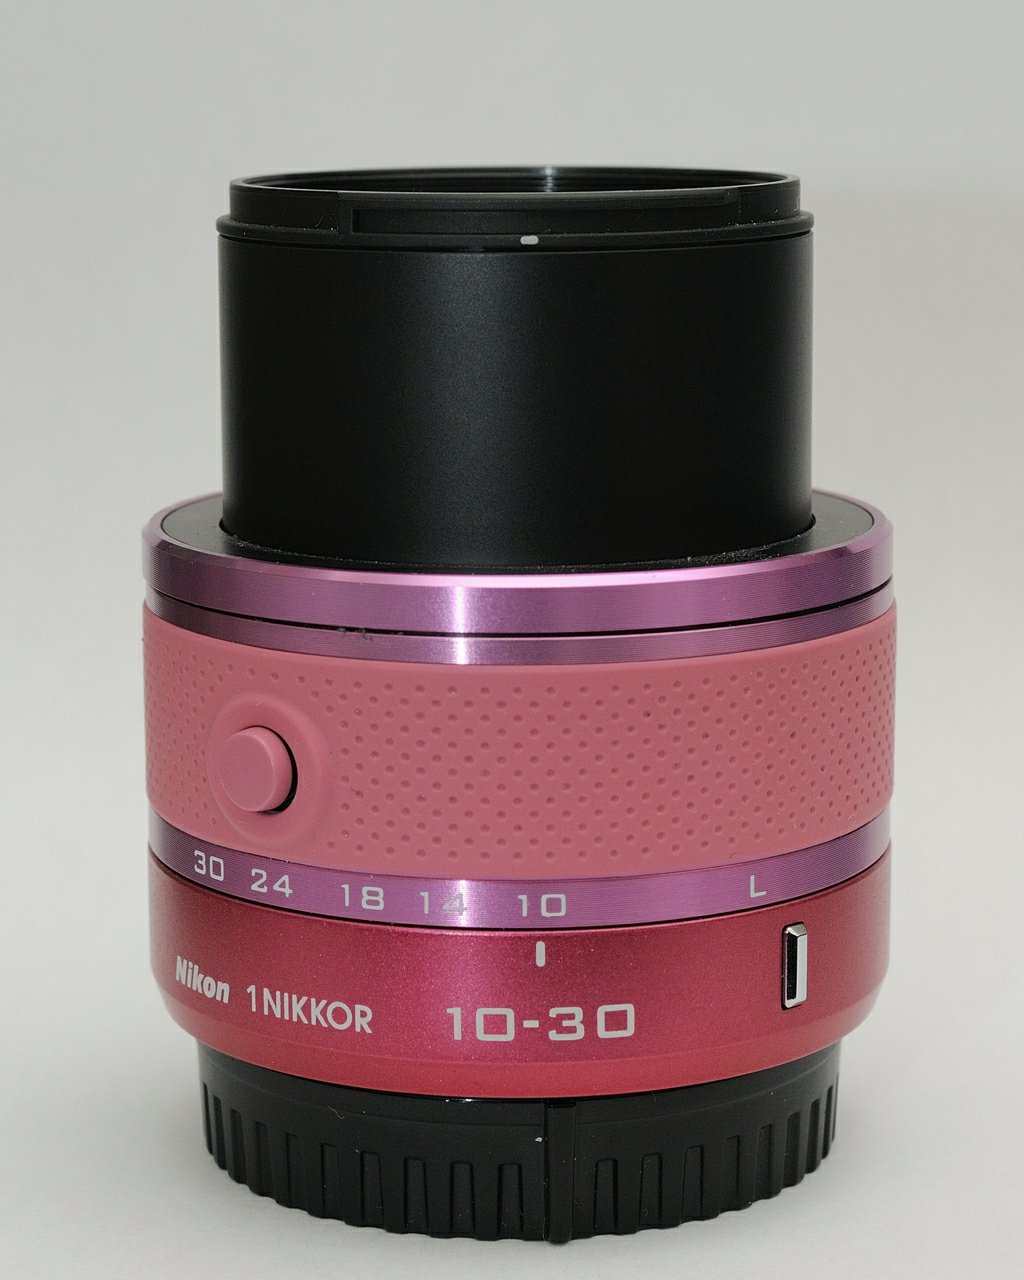 1 Nikkor 10-30mm f3.5-5.6 VR – MY CAMERA CABINET